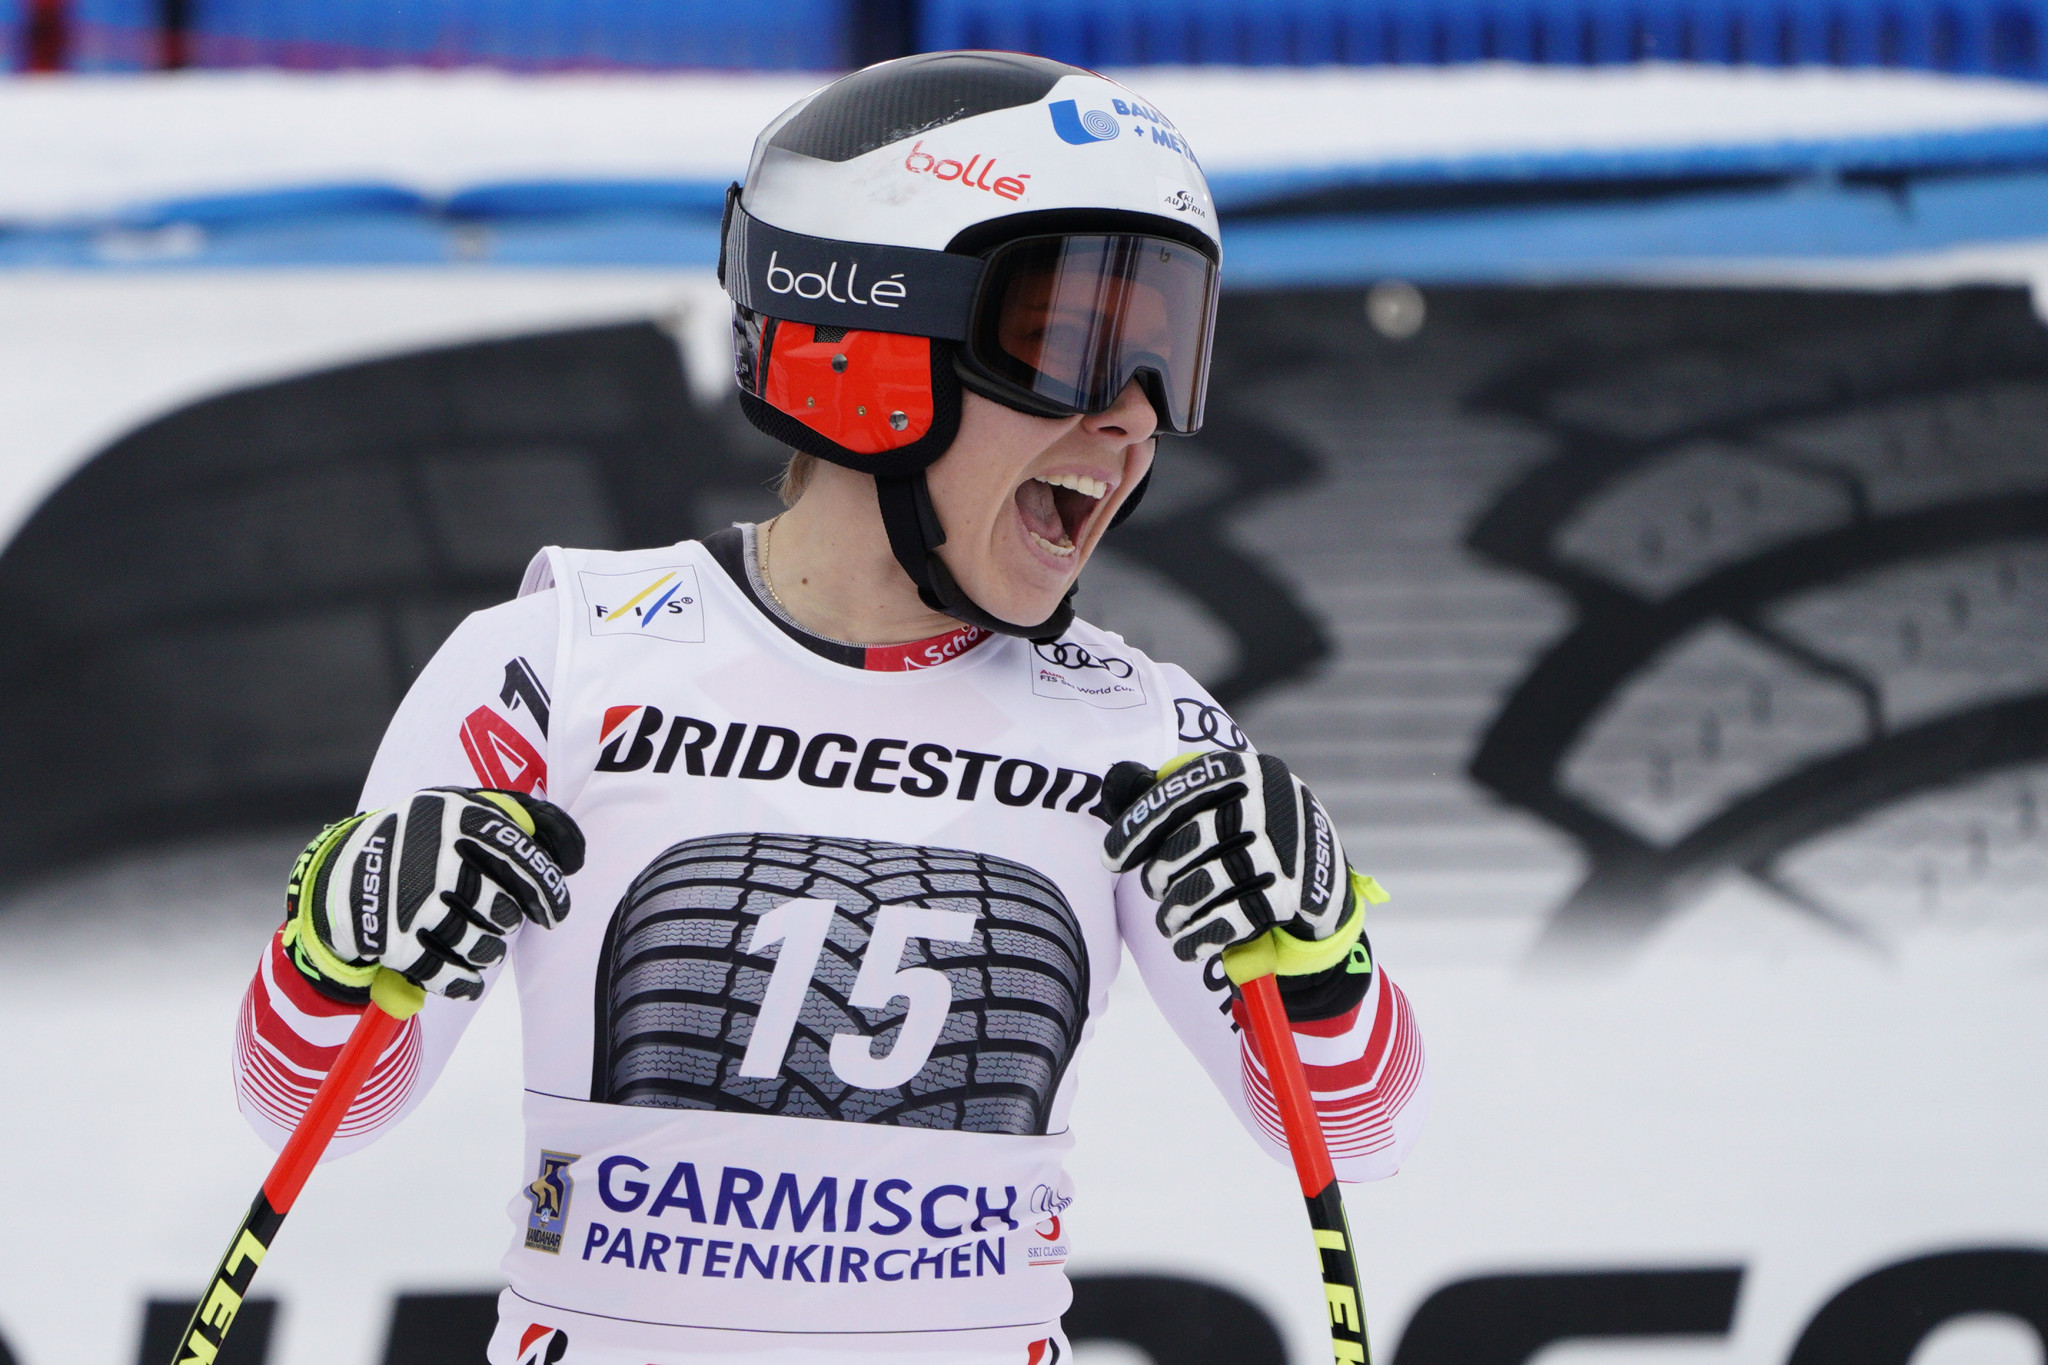 Austria;s 2017 super-G world champion Nicole Schmidhofer won in Garmisch-Partenkirchen ©Getty Images